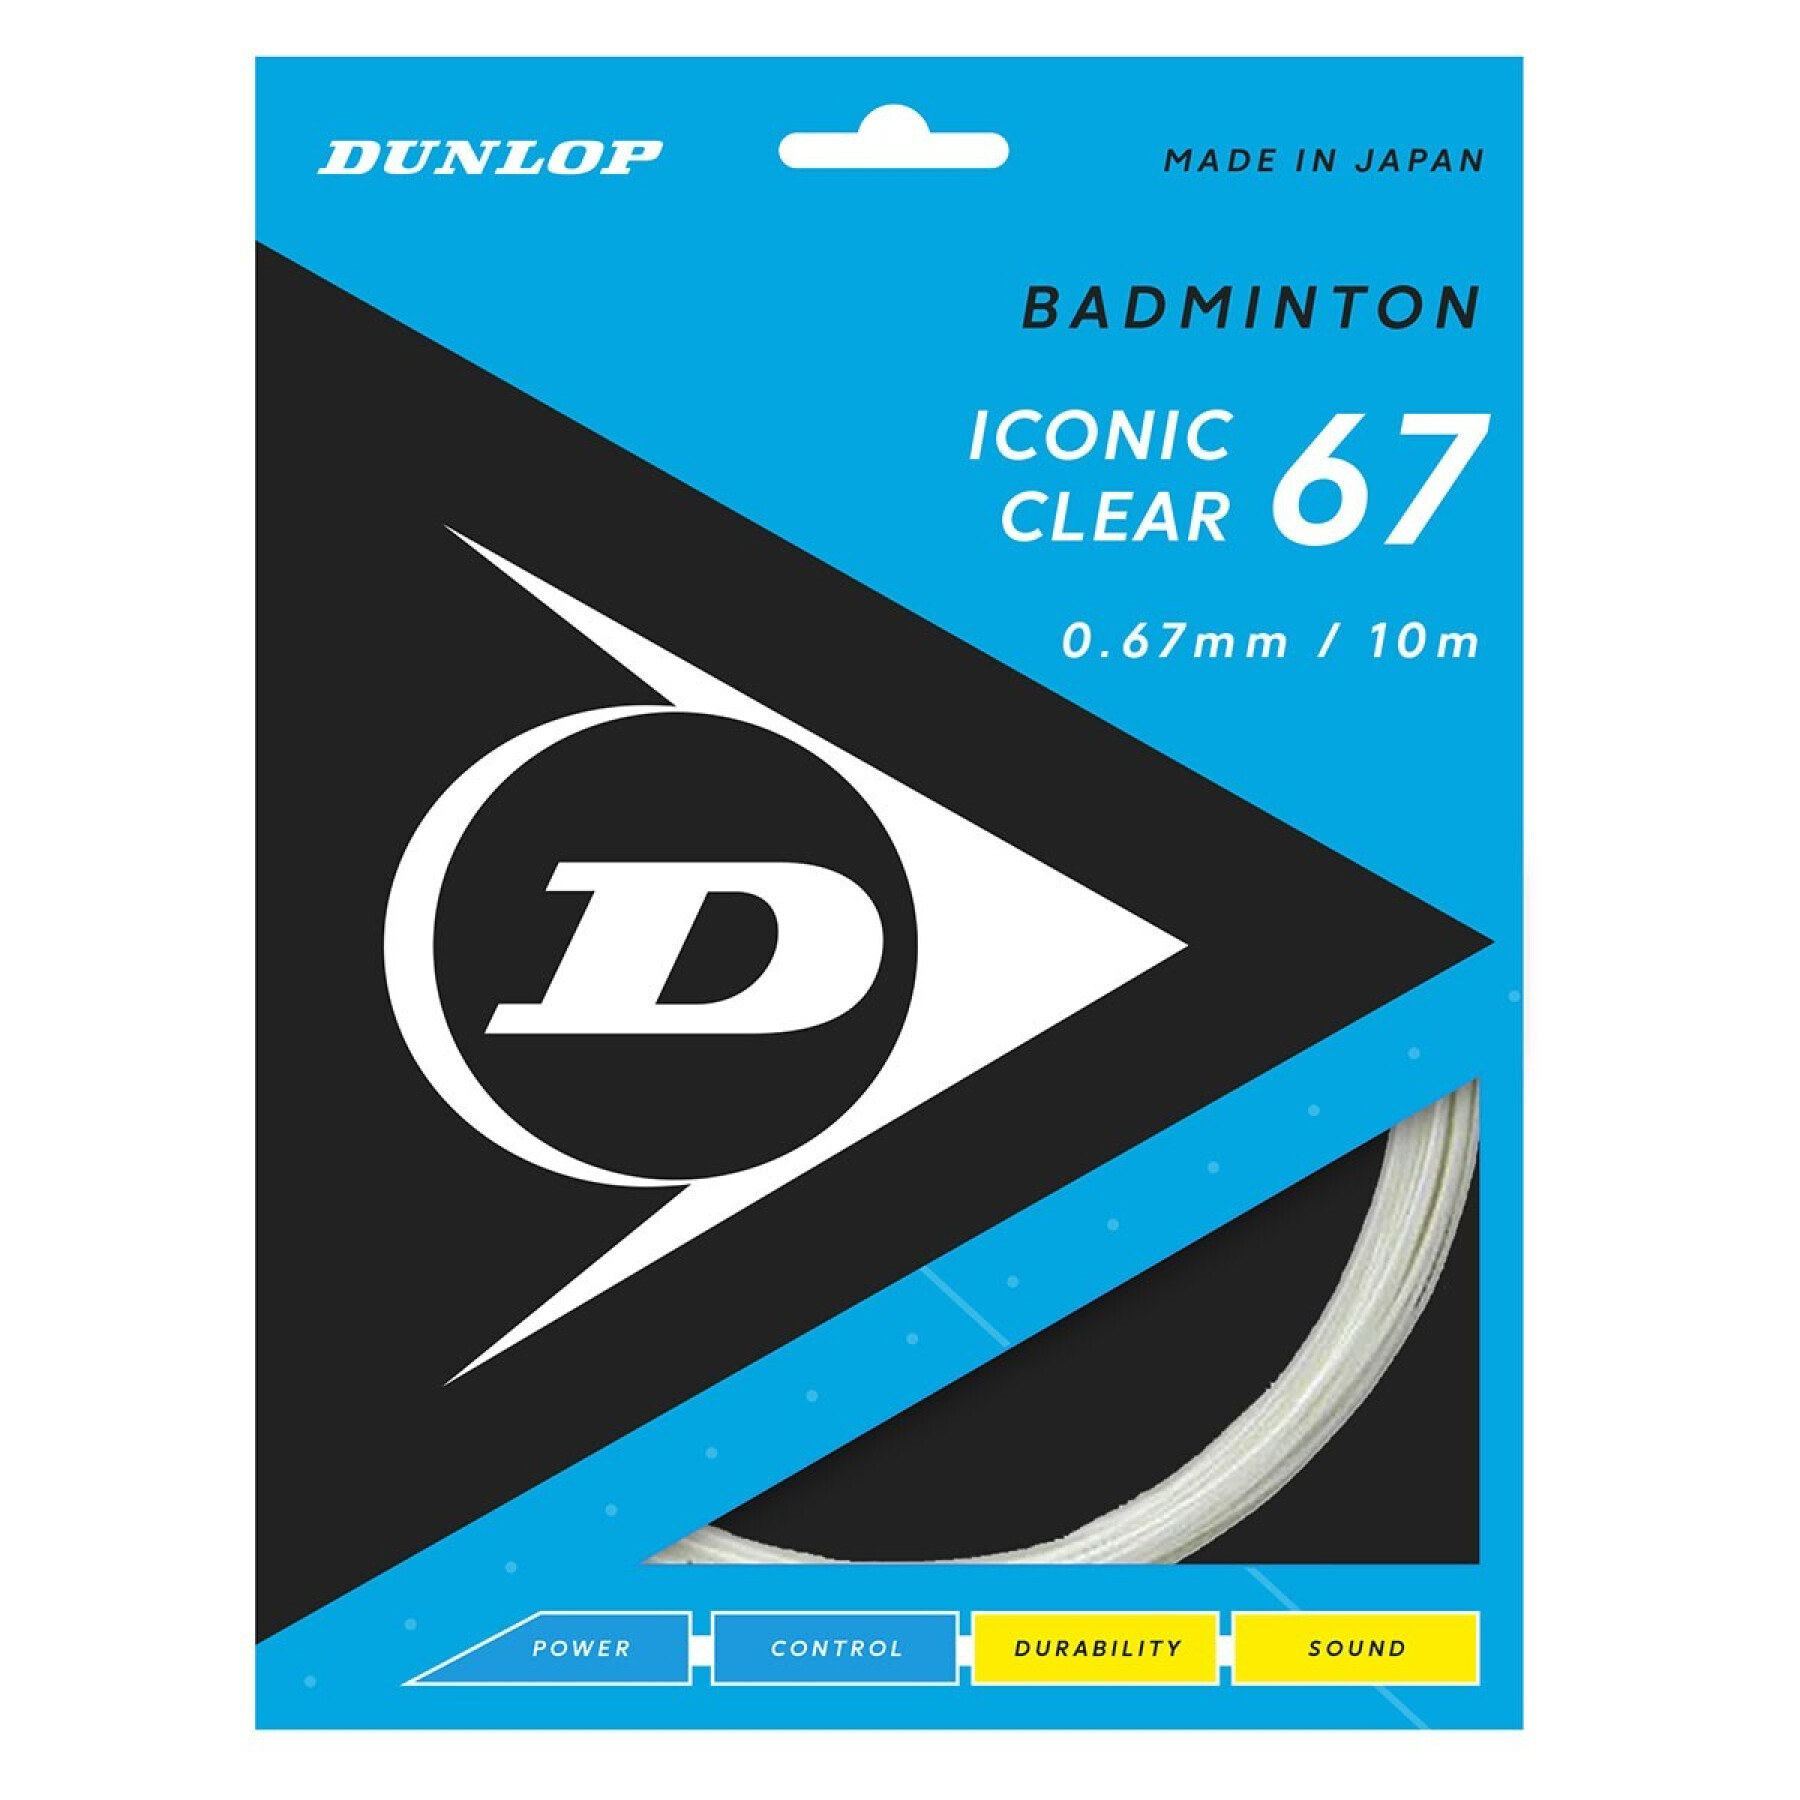 Badmintonsaiten Dunlop Iconic Clear 10 m